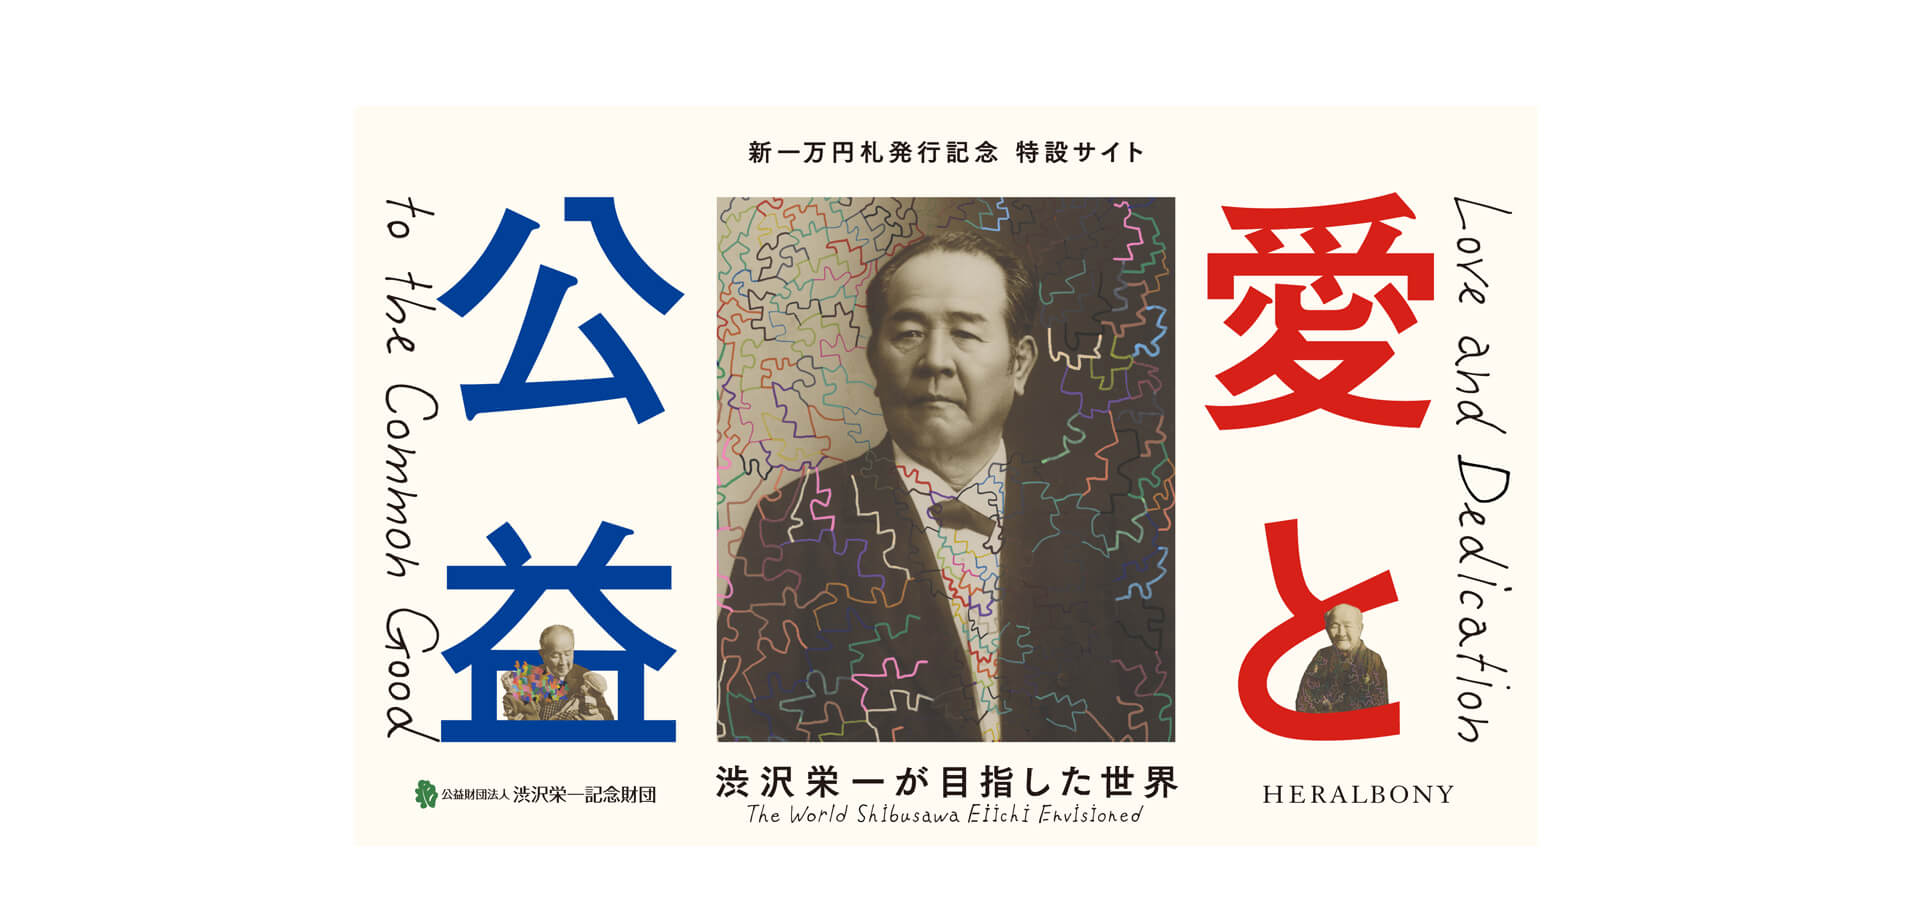 企画「愛と公益 渋沢栄一の目指した世界」 ポスター